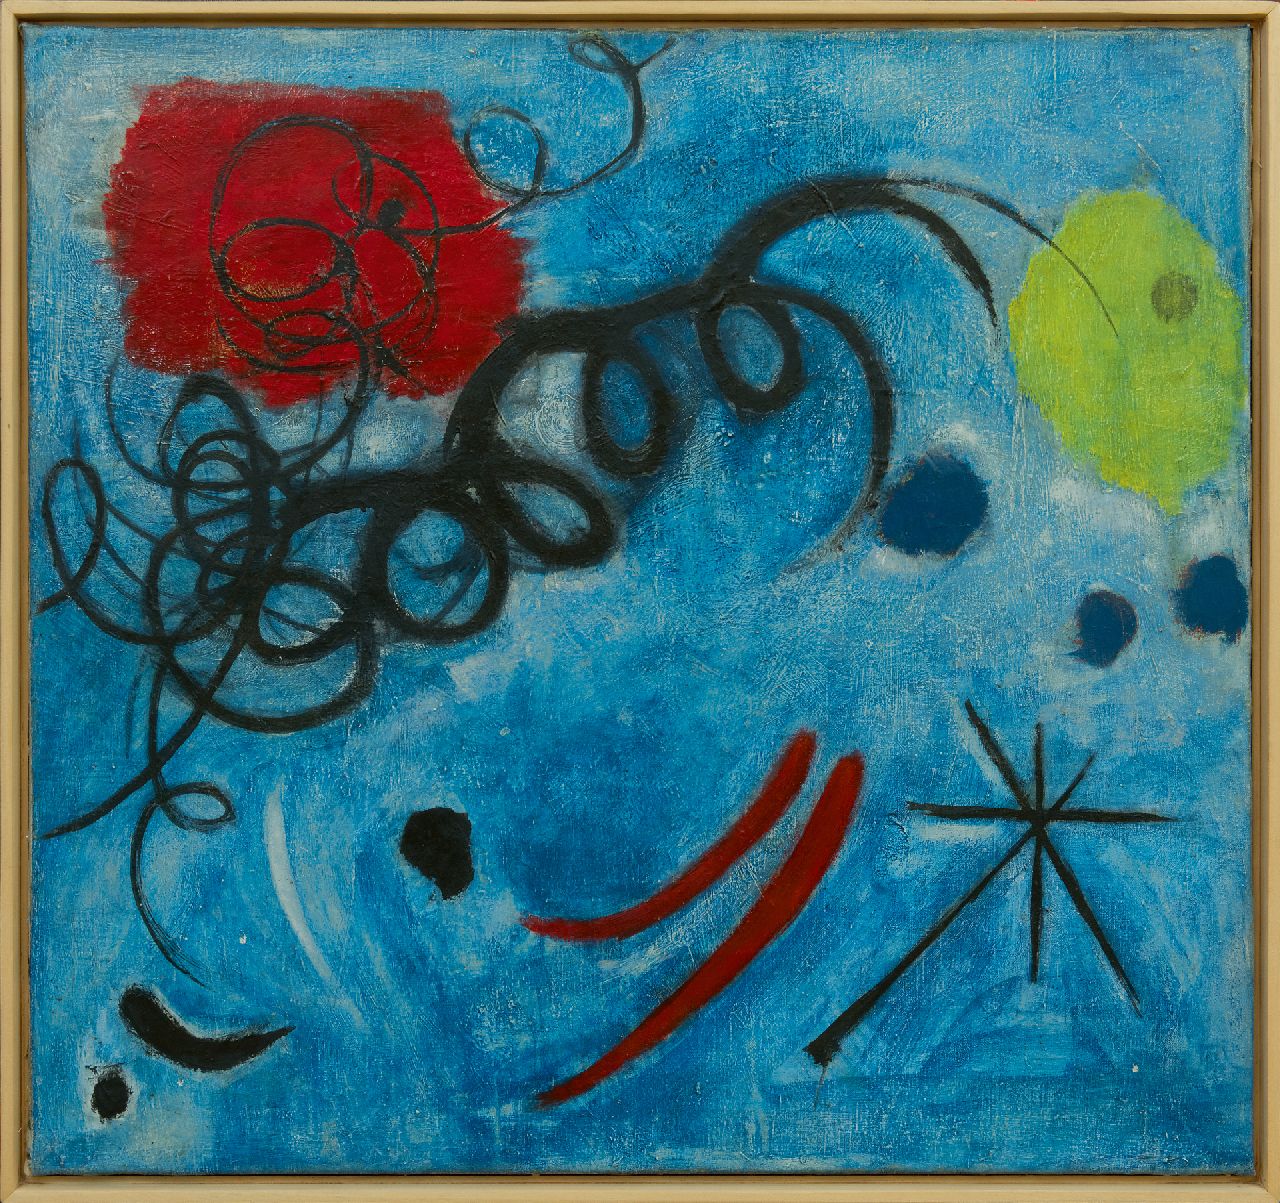 Wolvecamp Th.W.  | 'Theo' Wilhelm Wolvecamp | Schilderijen te koop aangeboden | Compositie in Blauw, olieverf op doek 74,4 x 79,7 cm, gesigneerd verso en te dateren ca. 1949